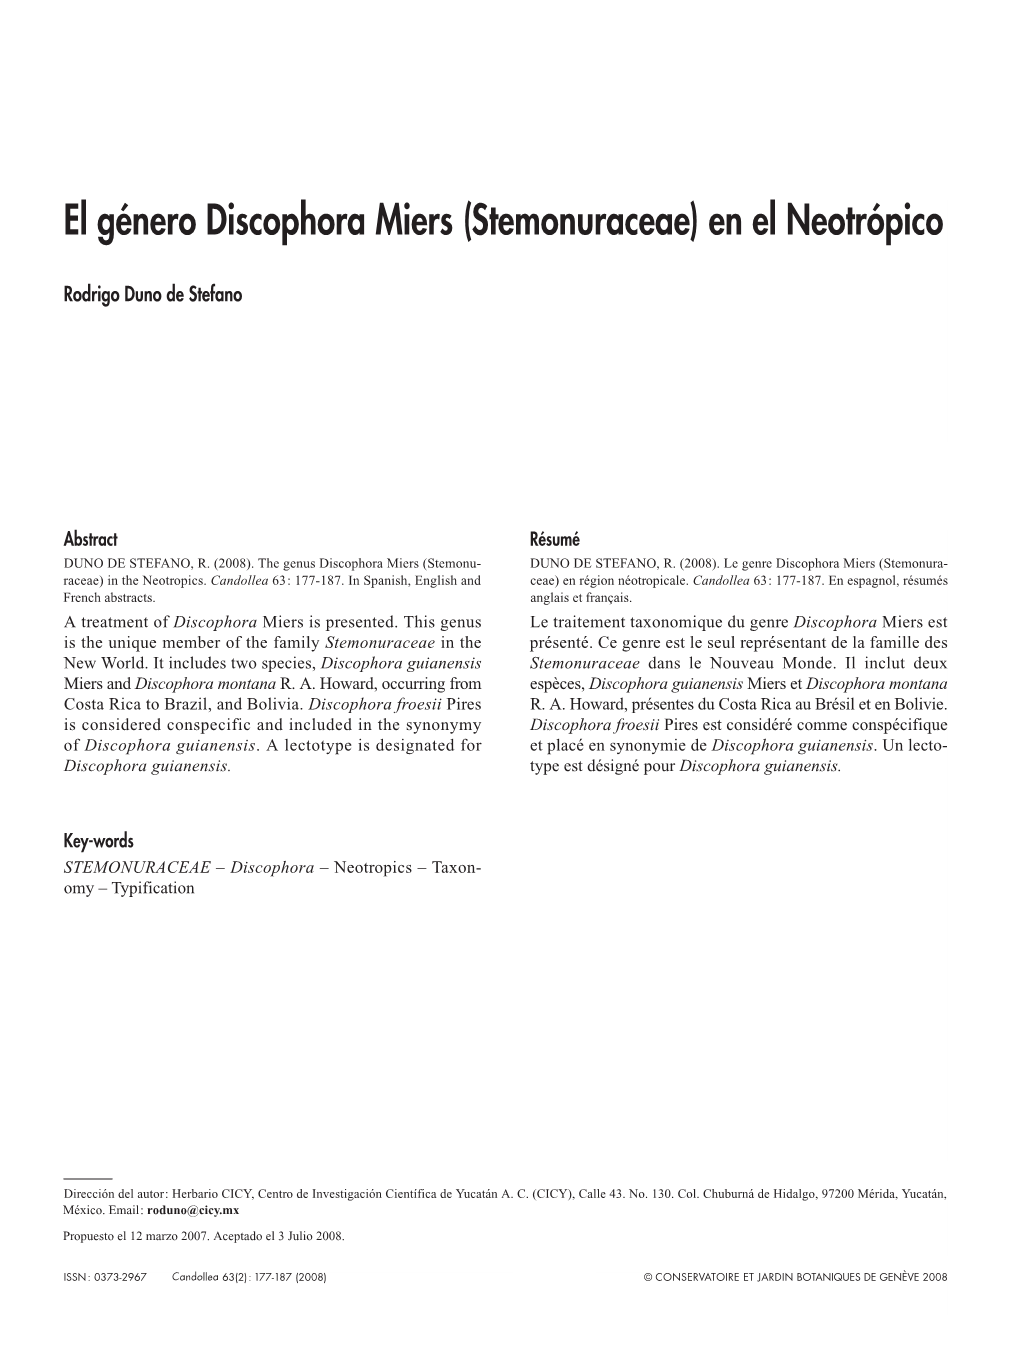 El Género Discophora Miers (Stemonuraceae) En El Neotrópico